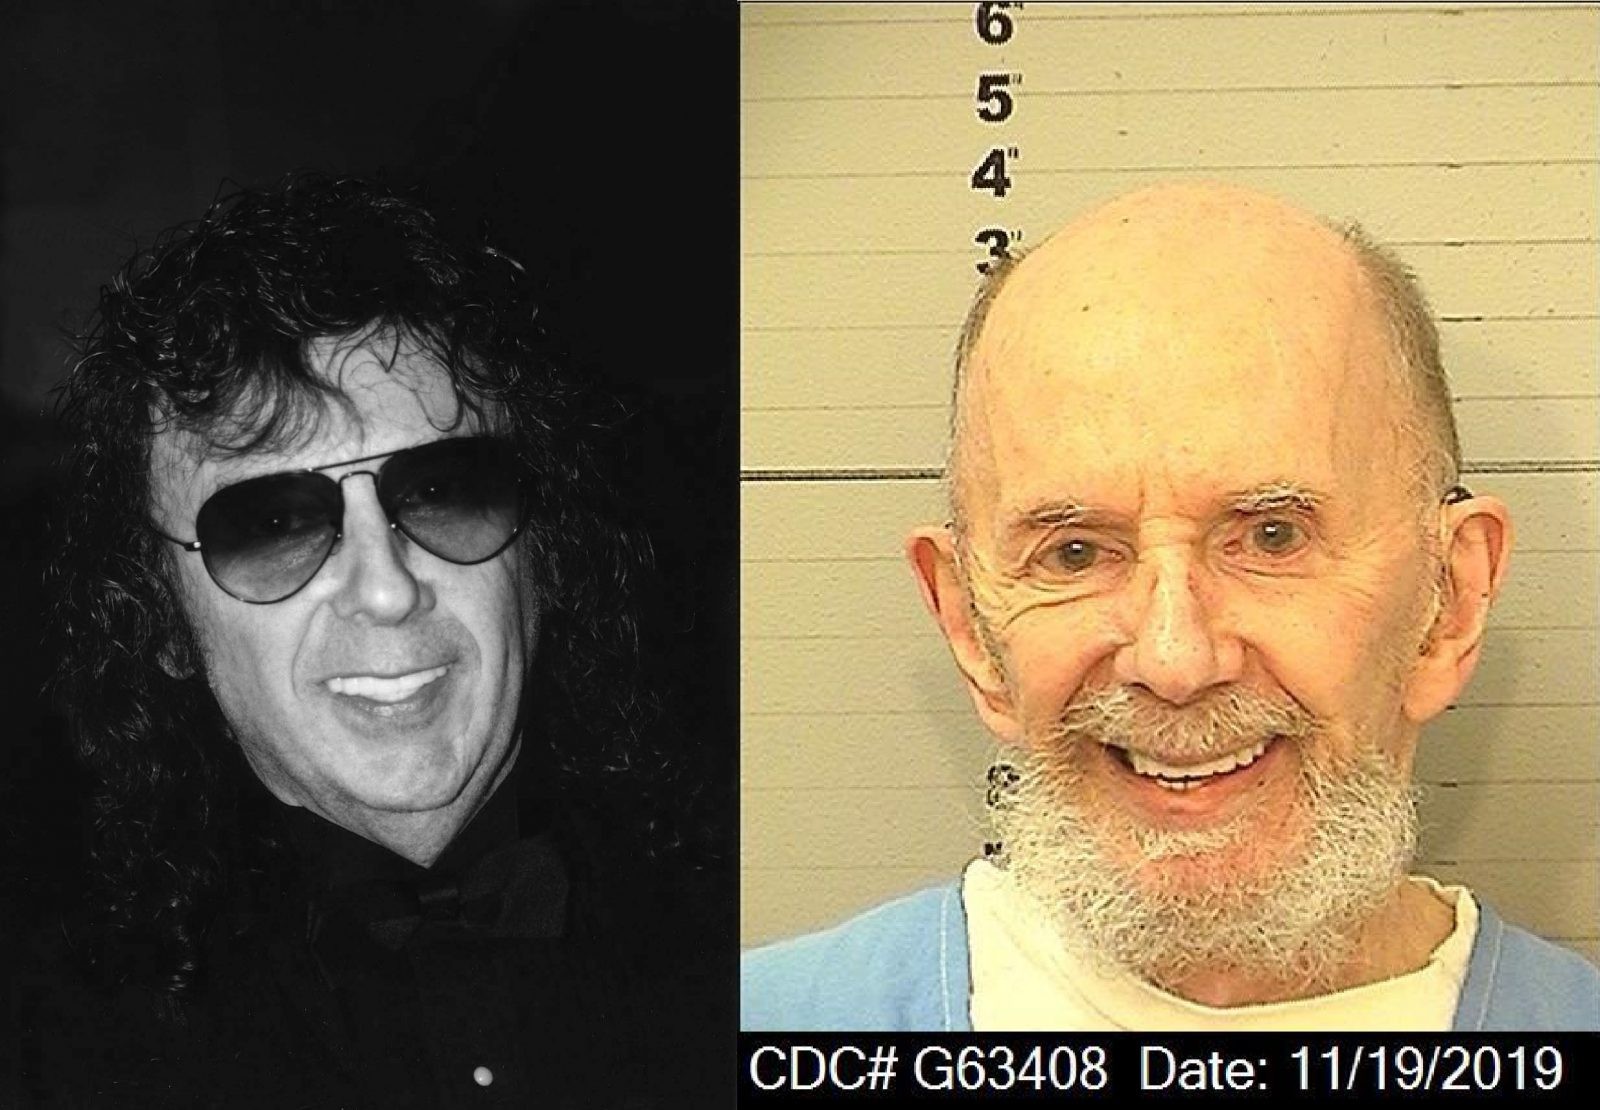 Nie żyje producent ostatniego albumu Beatlesów. Phil Spector zmarł w więzieniu na COVID-19